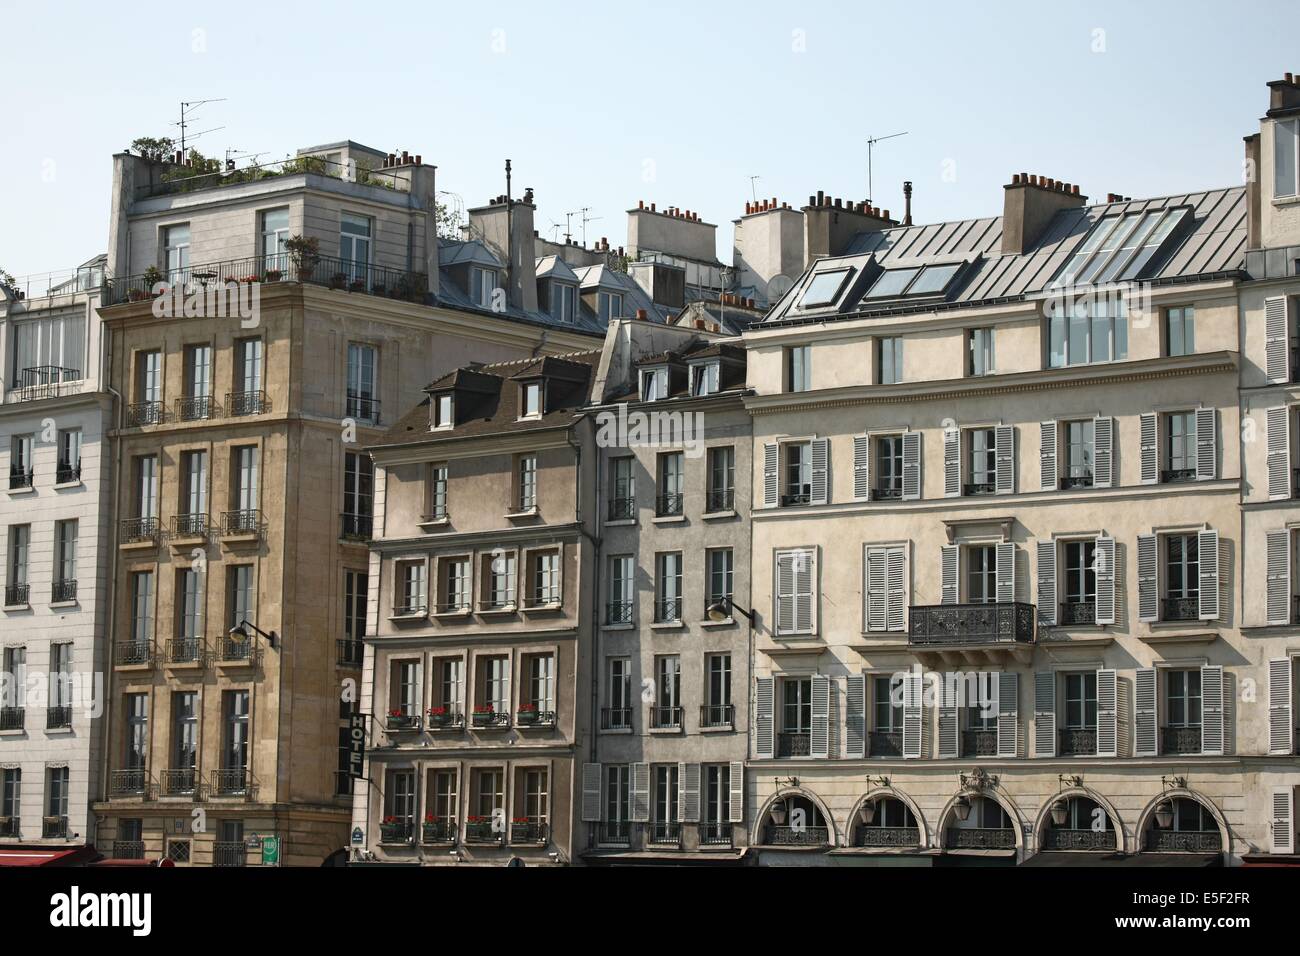 France, paris, quai des grands augustins, bord de seine, immeubles, batiments, Stock Photo